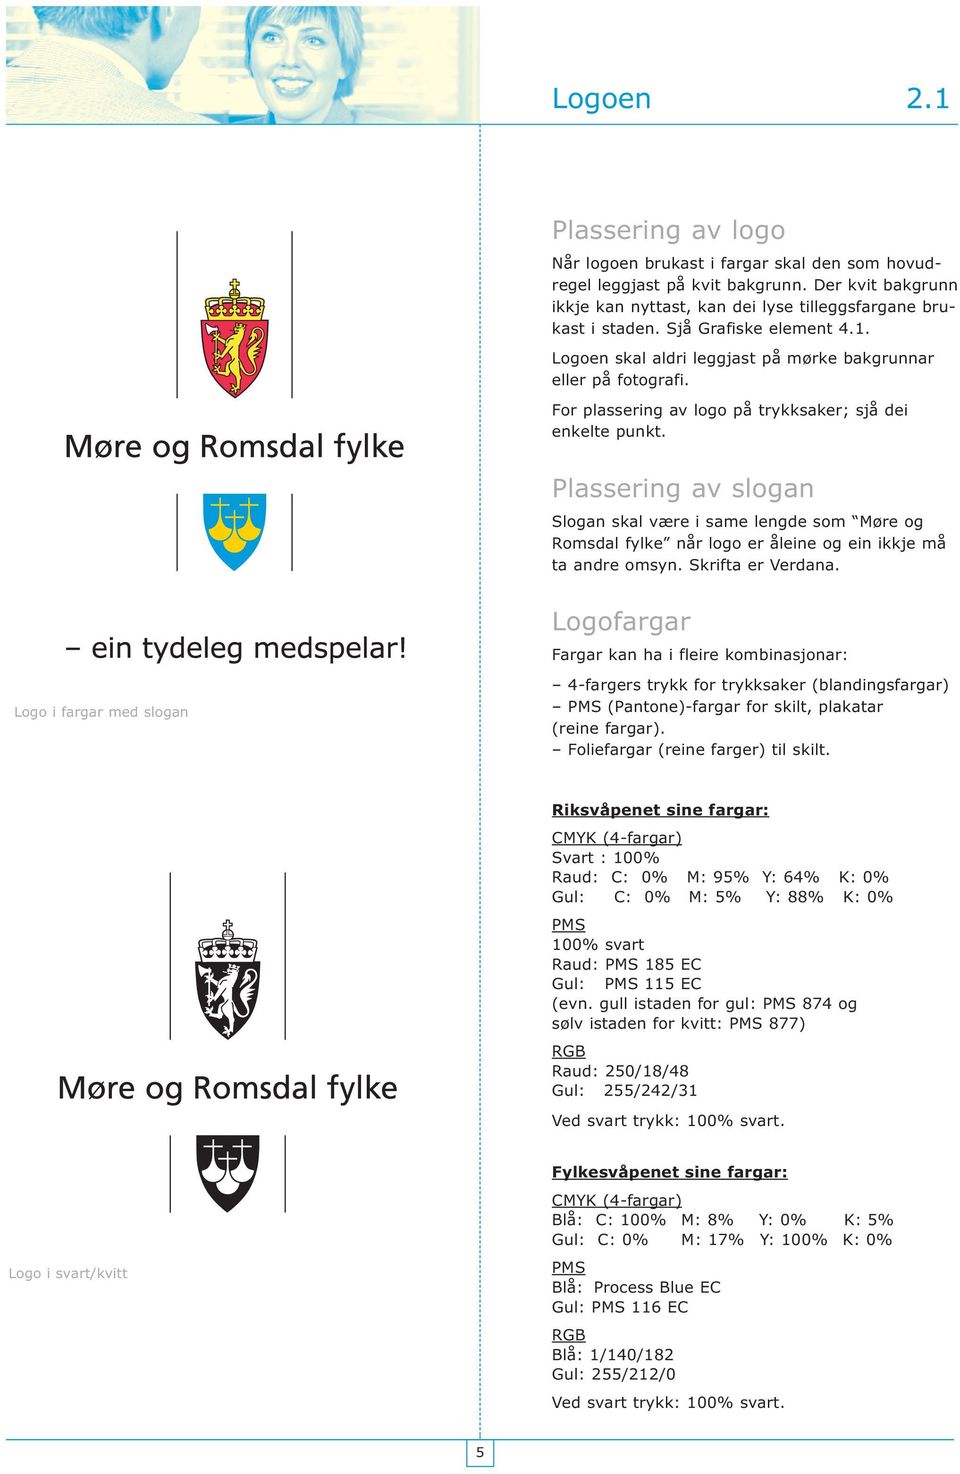 Plassering av slogan Slogan skal være i same lengde som Møre og Romsdal fylke når logo er åleine og ein ikkje må ta andre omsyn. Skrifta er Verdana.